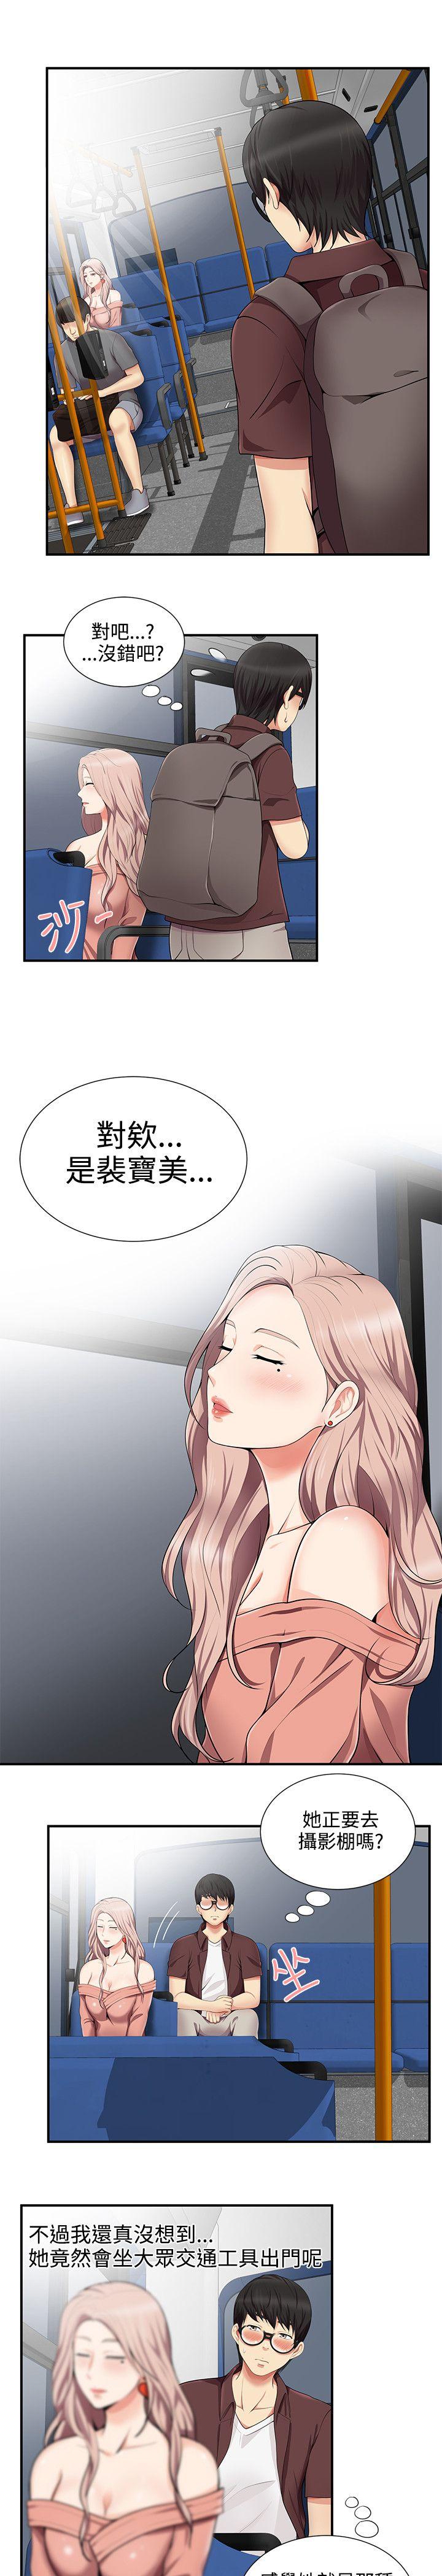 韩国污漫画 無法自拔的口紅膠 第14话 2